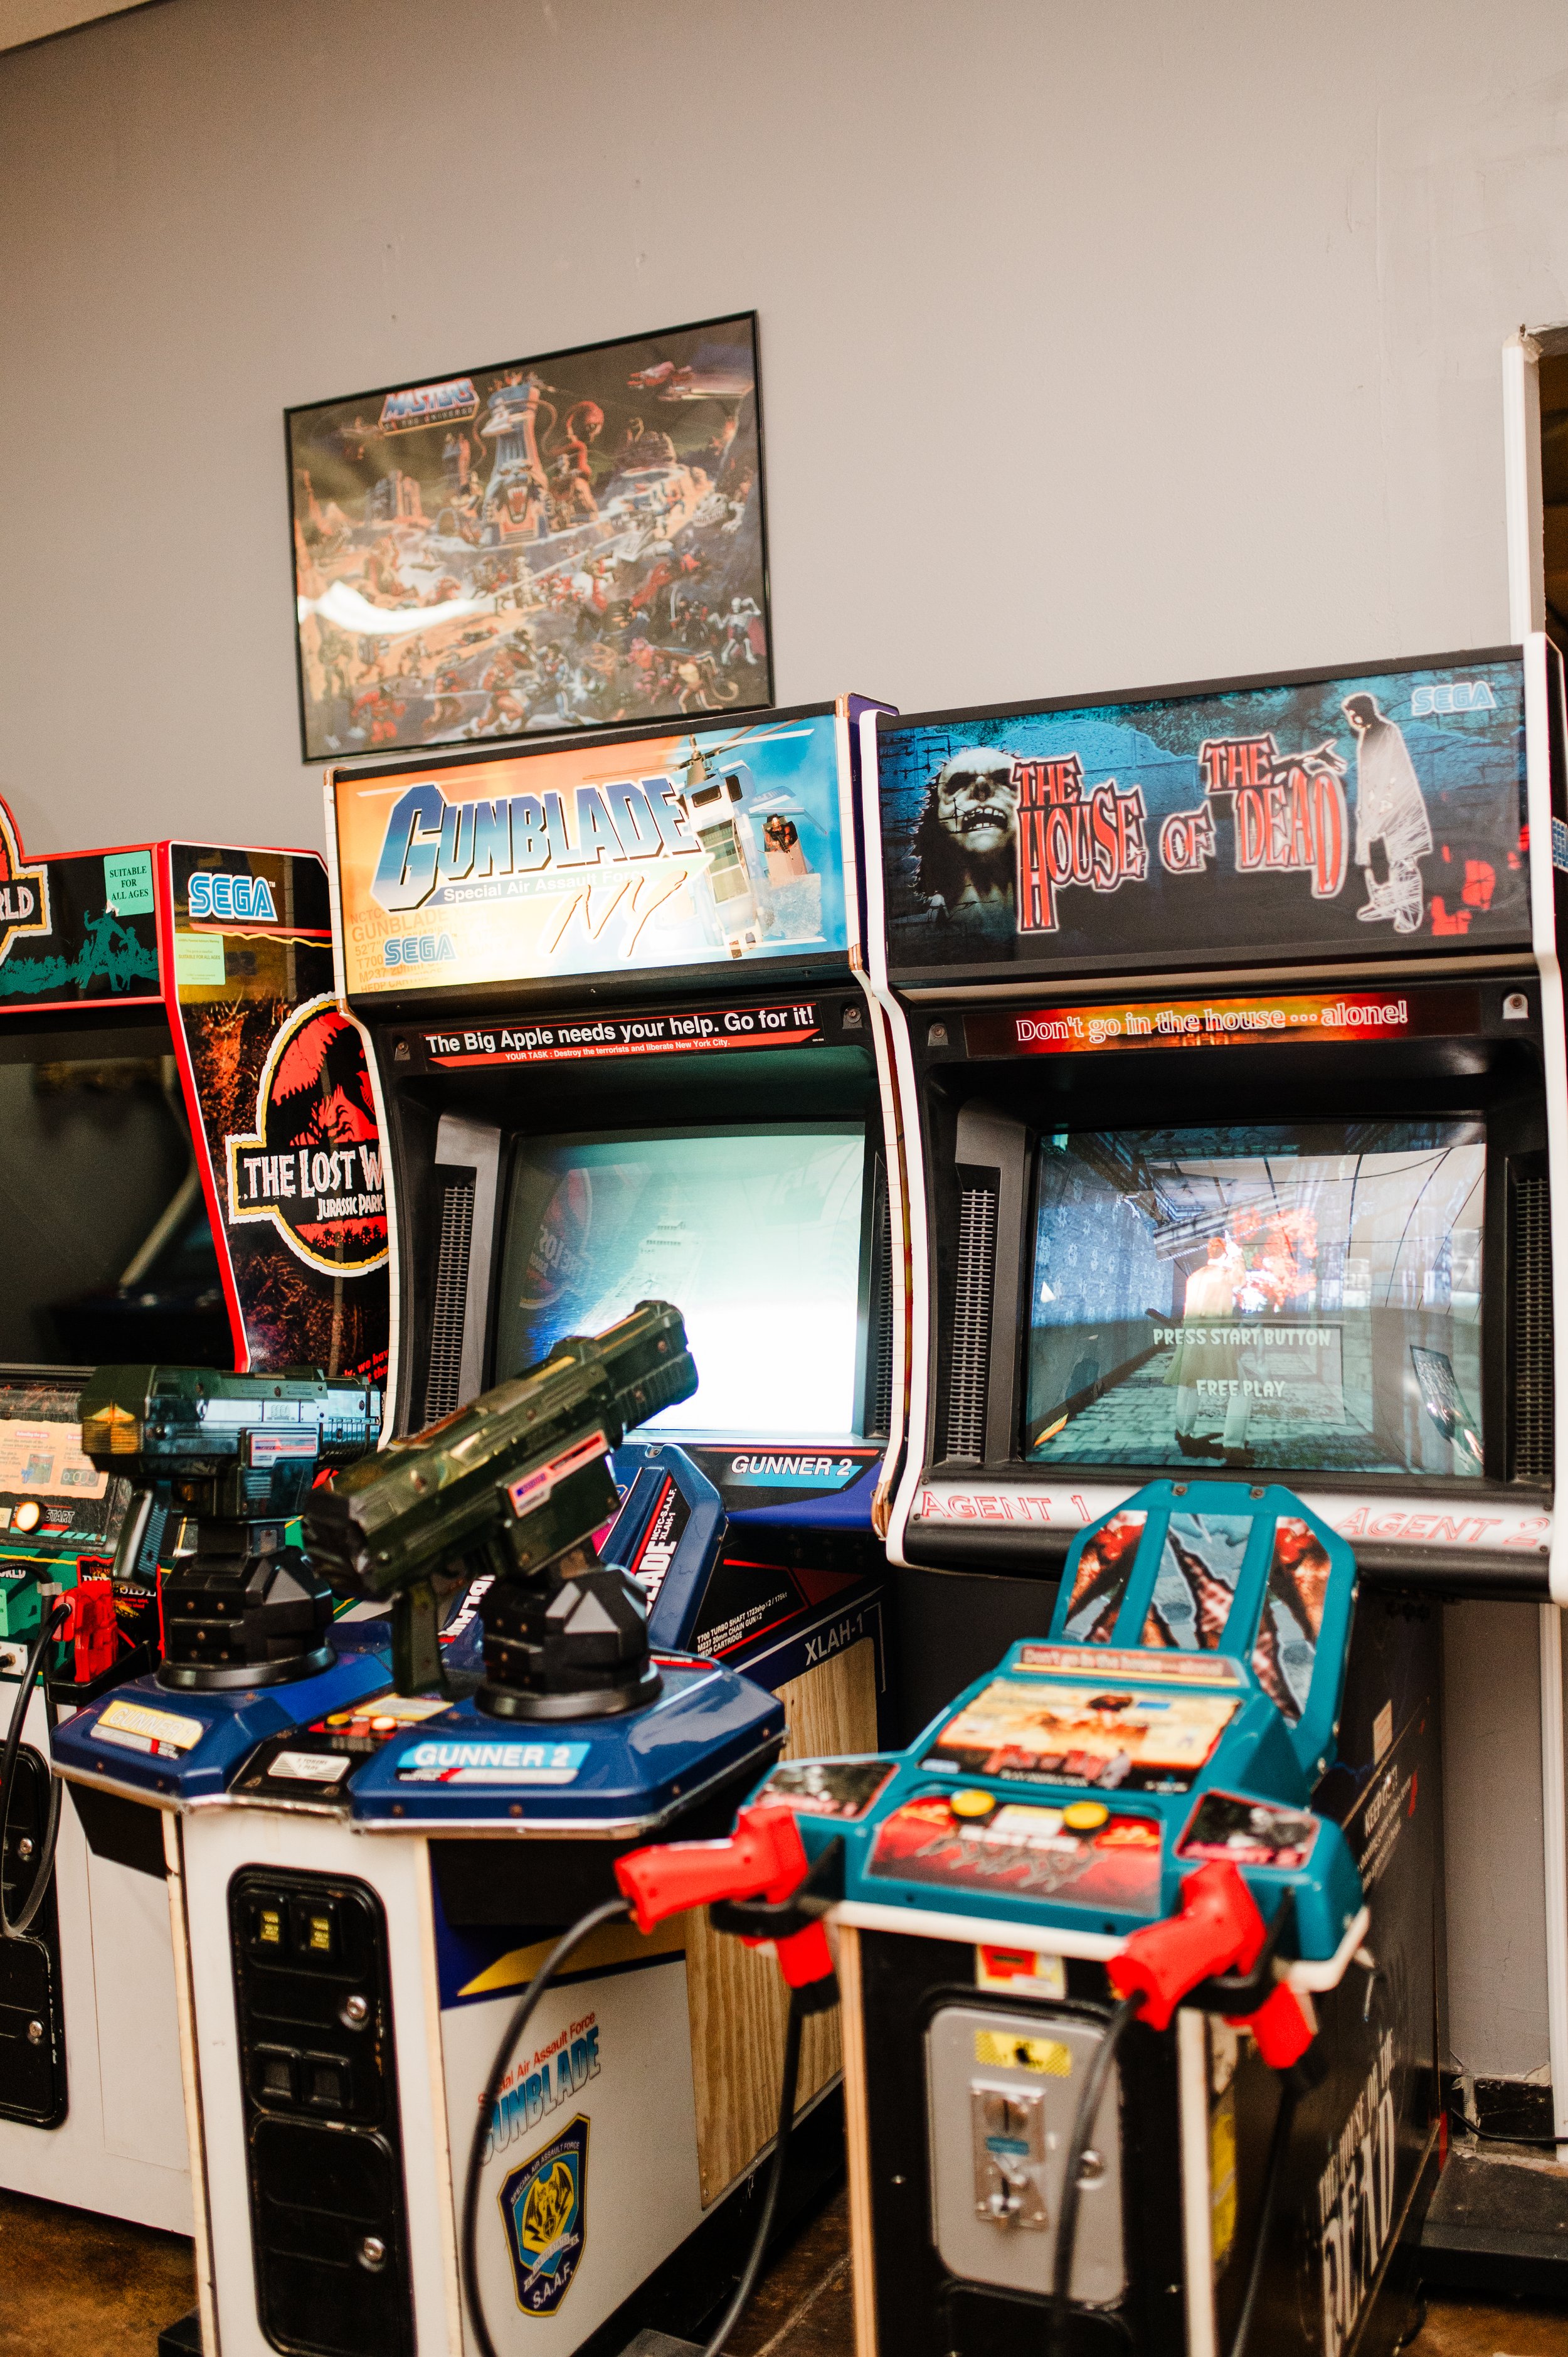 MENU - GLITCH Arcade & Games Room